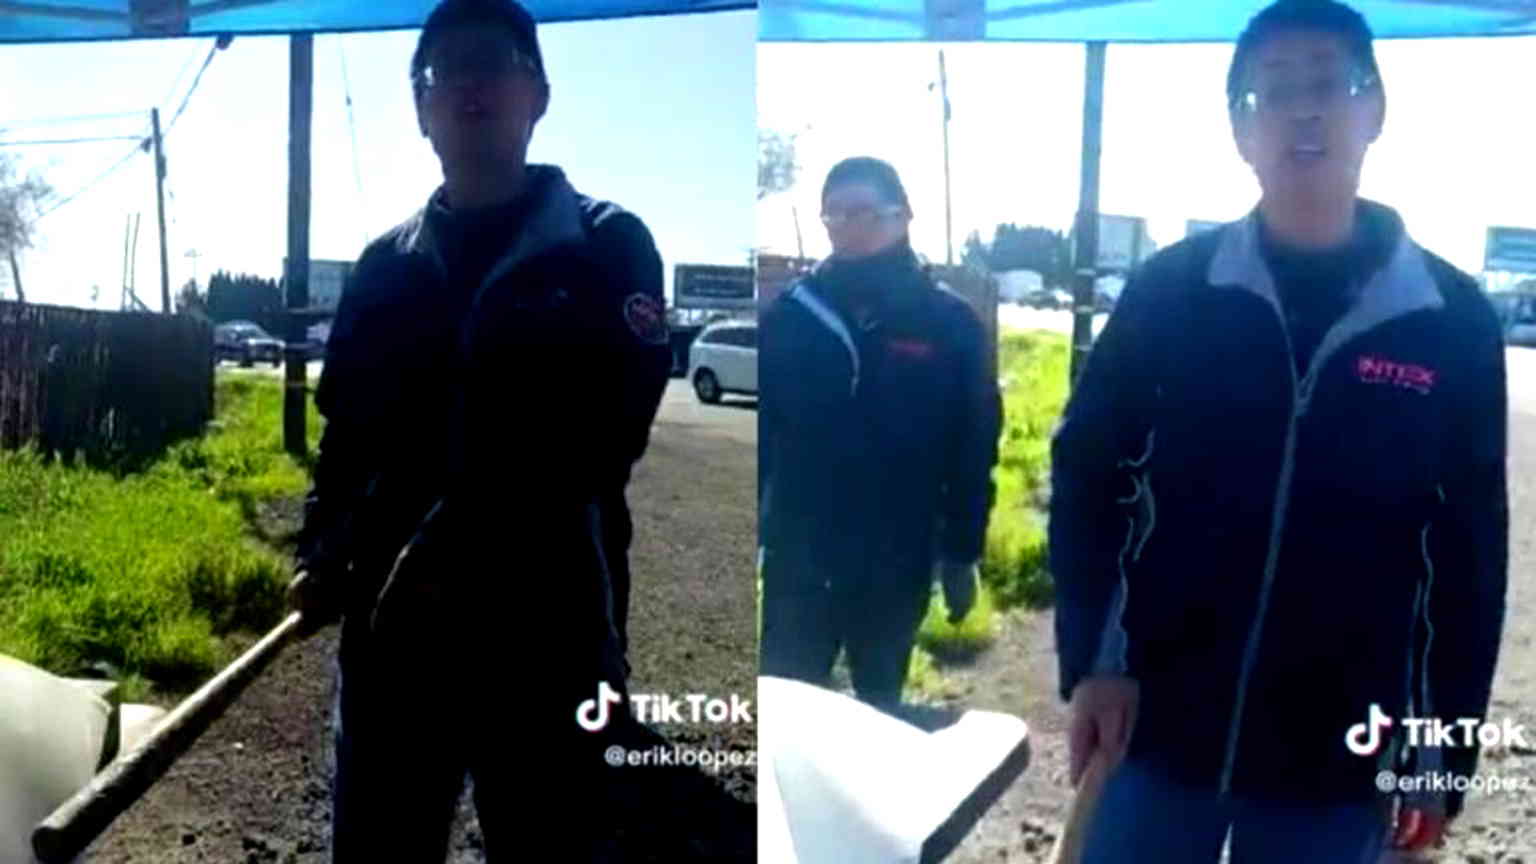 Man arrested for baseball bat attack on food vendor in San Jose